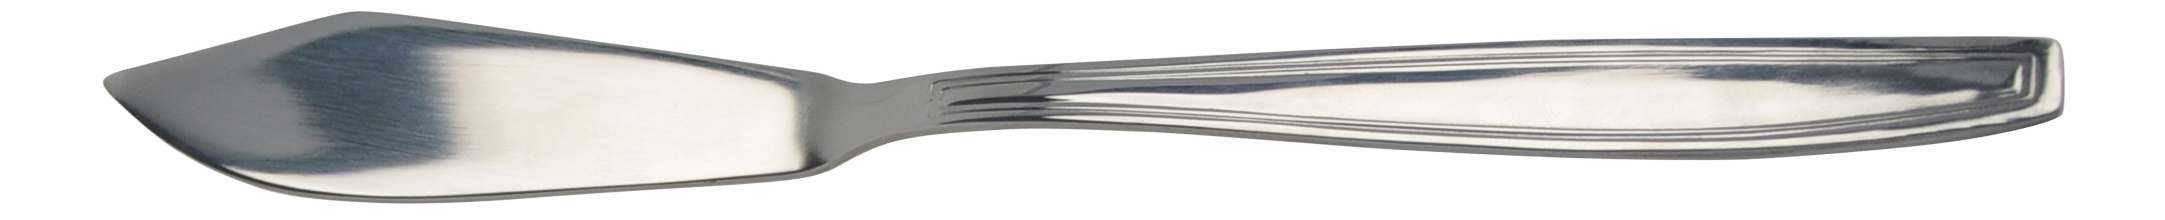 фото Набор столовых ножей regent inox 93-cu-eu-12.3 215 мм